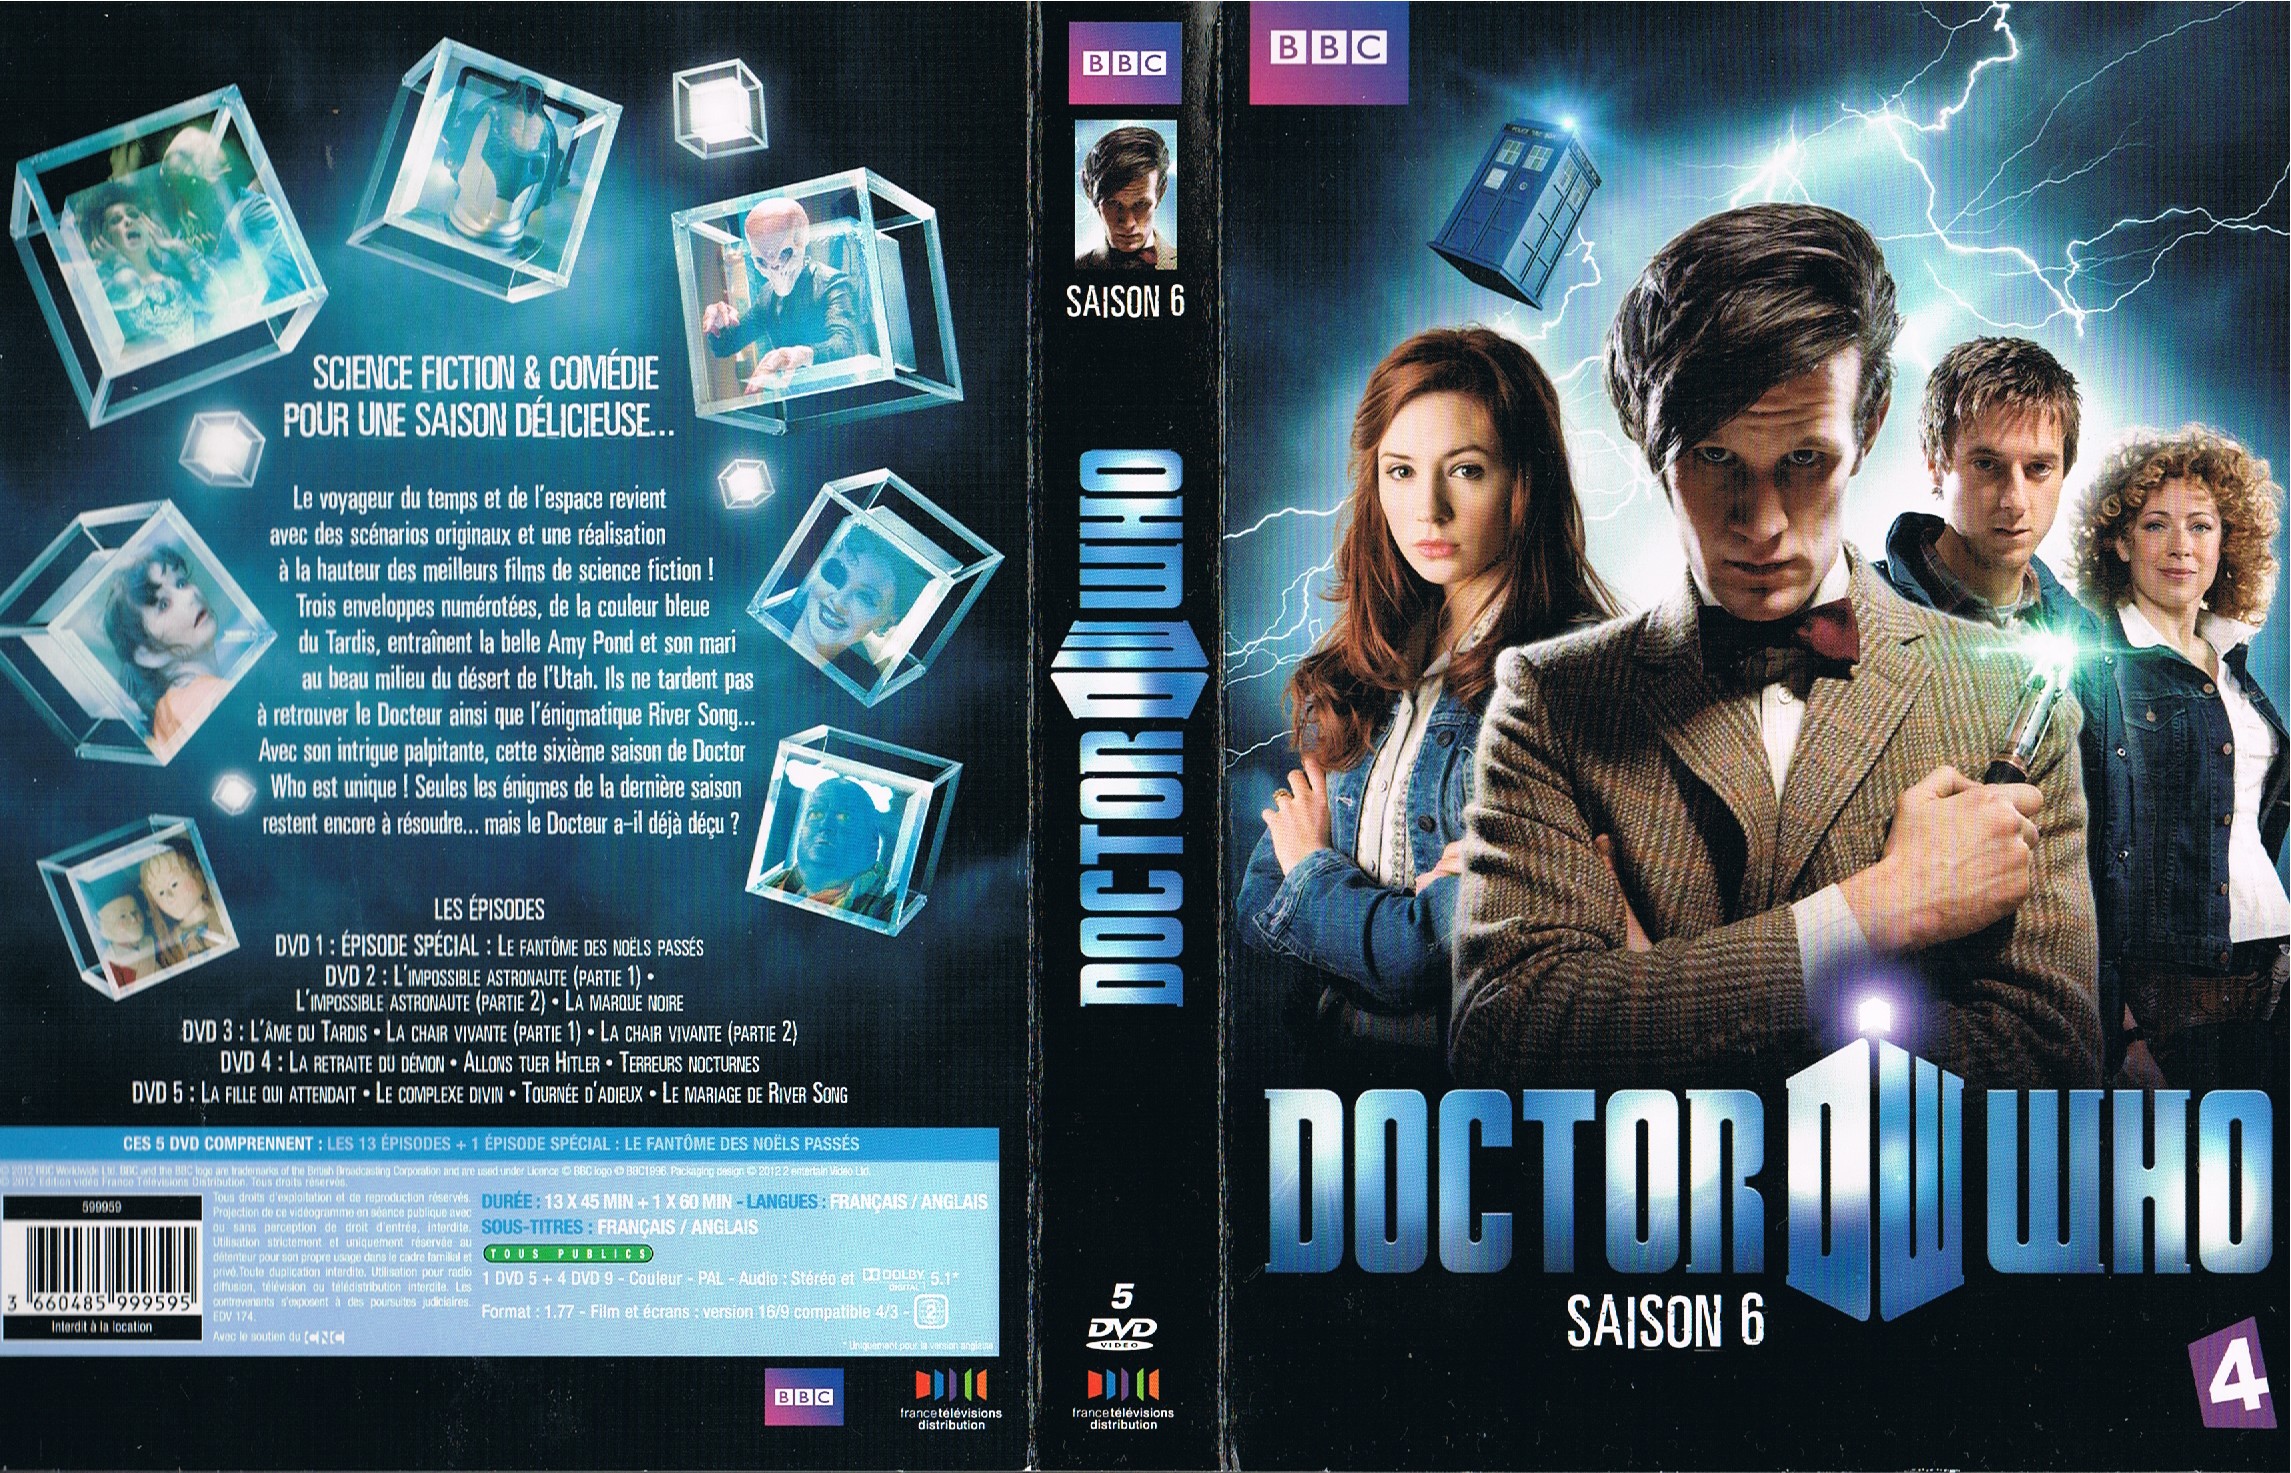 Jaquette DVD Doctor Who Saison 6 COFFRET